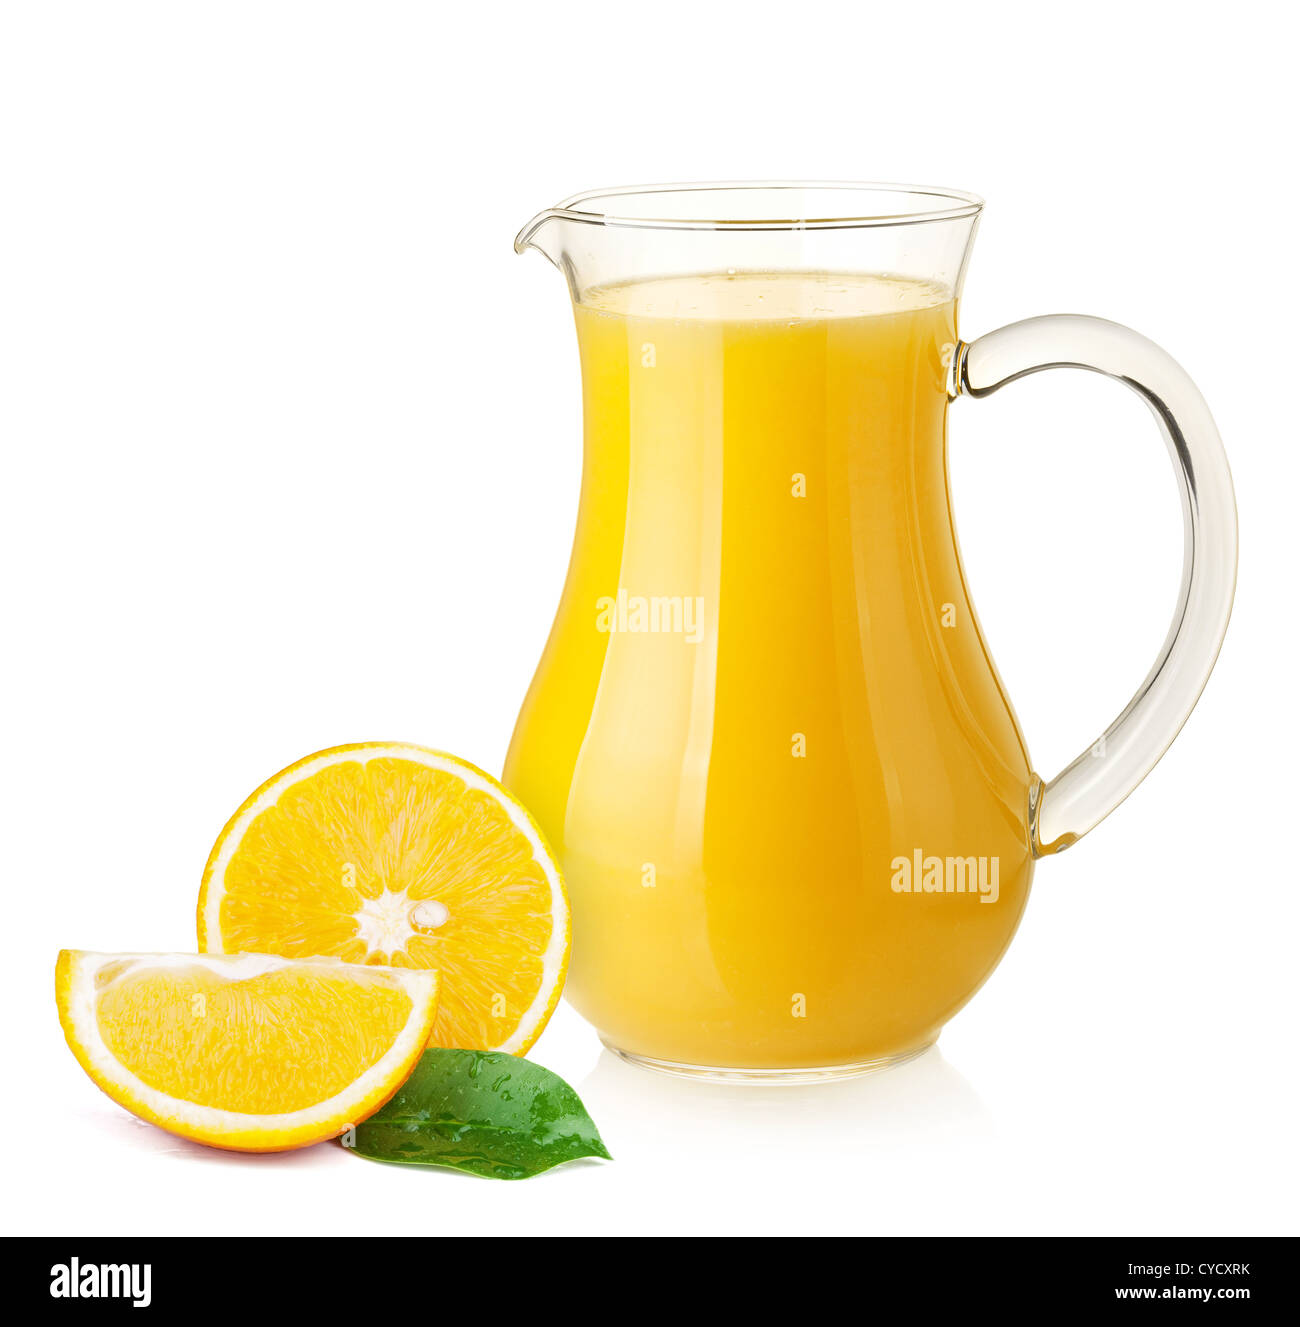 Jug of orange juice and orange fruits isolated on white, Stock image